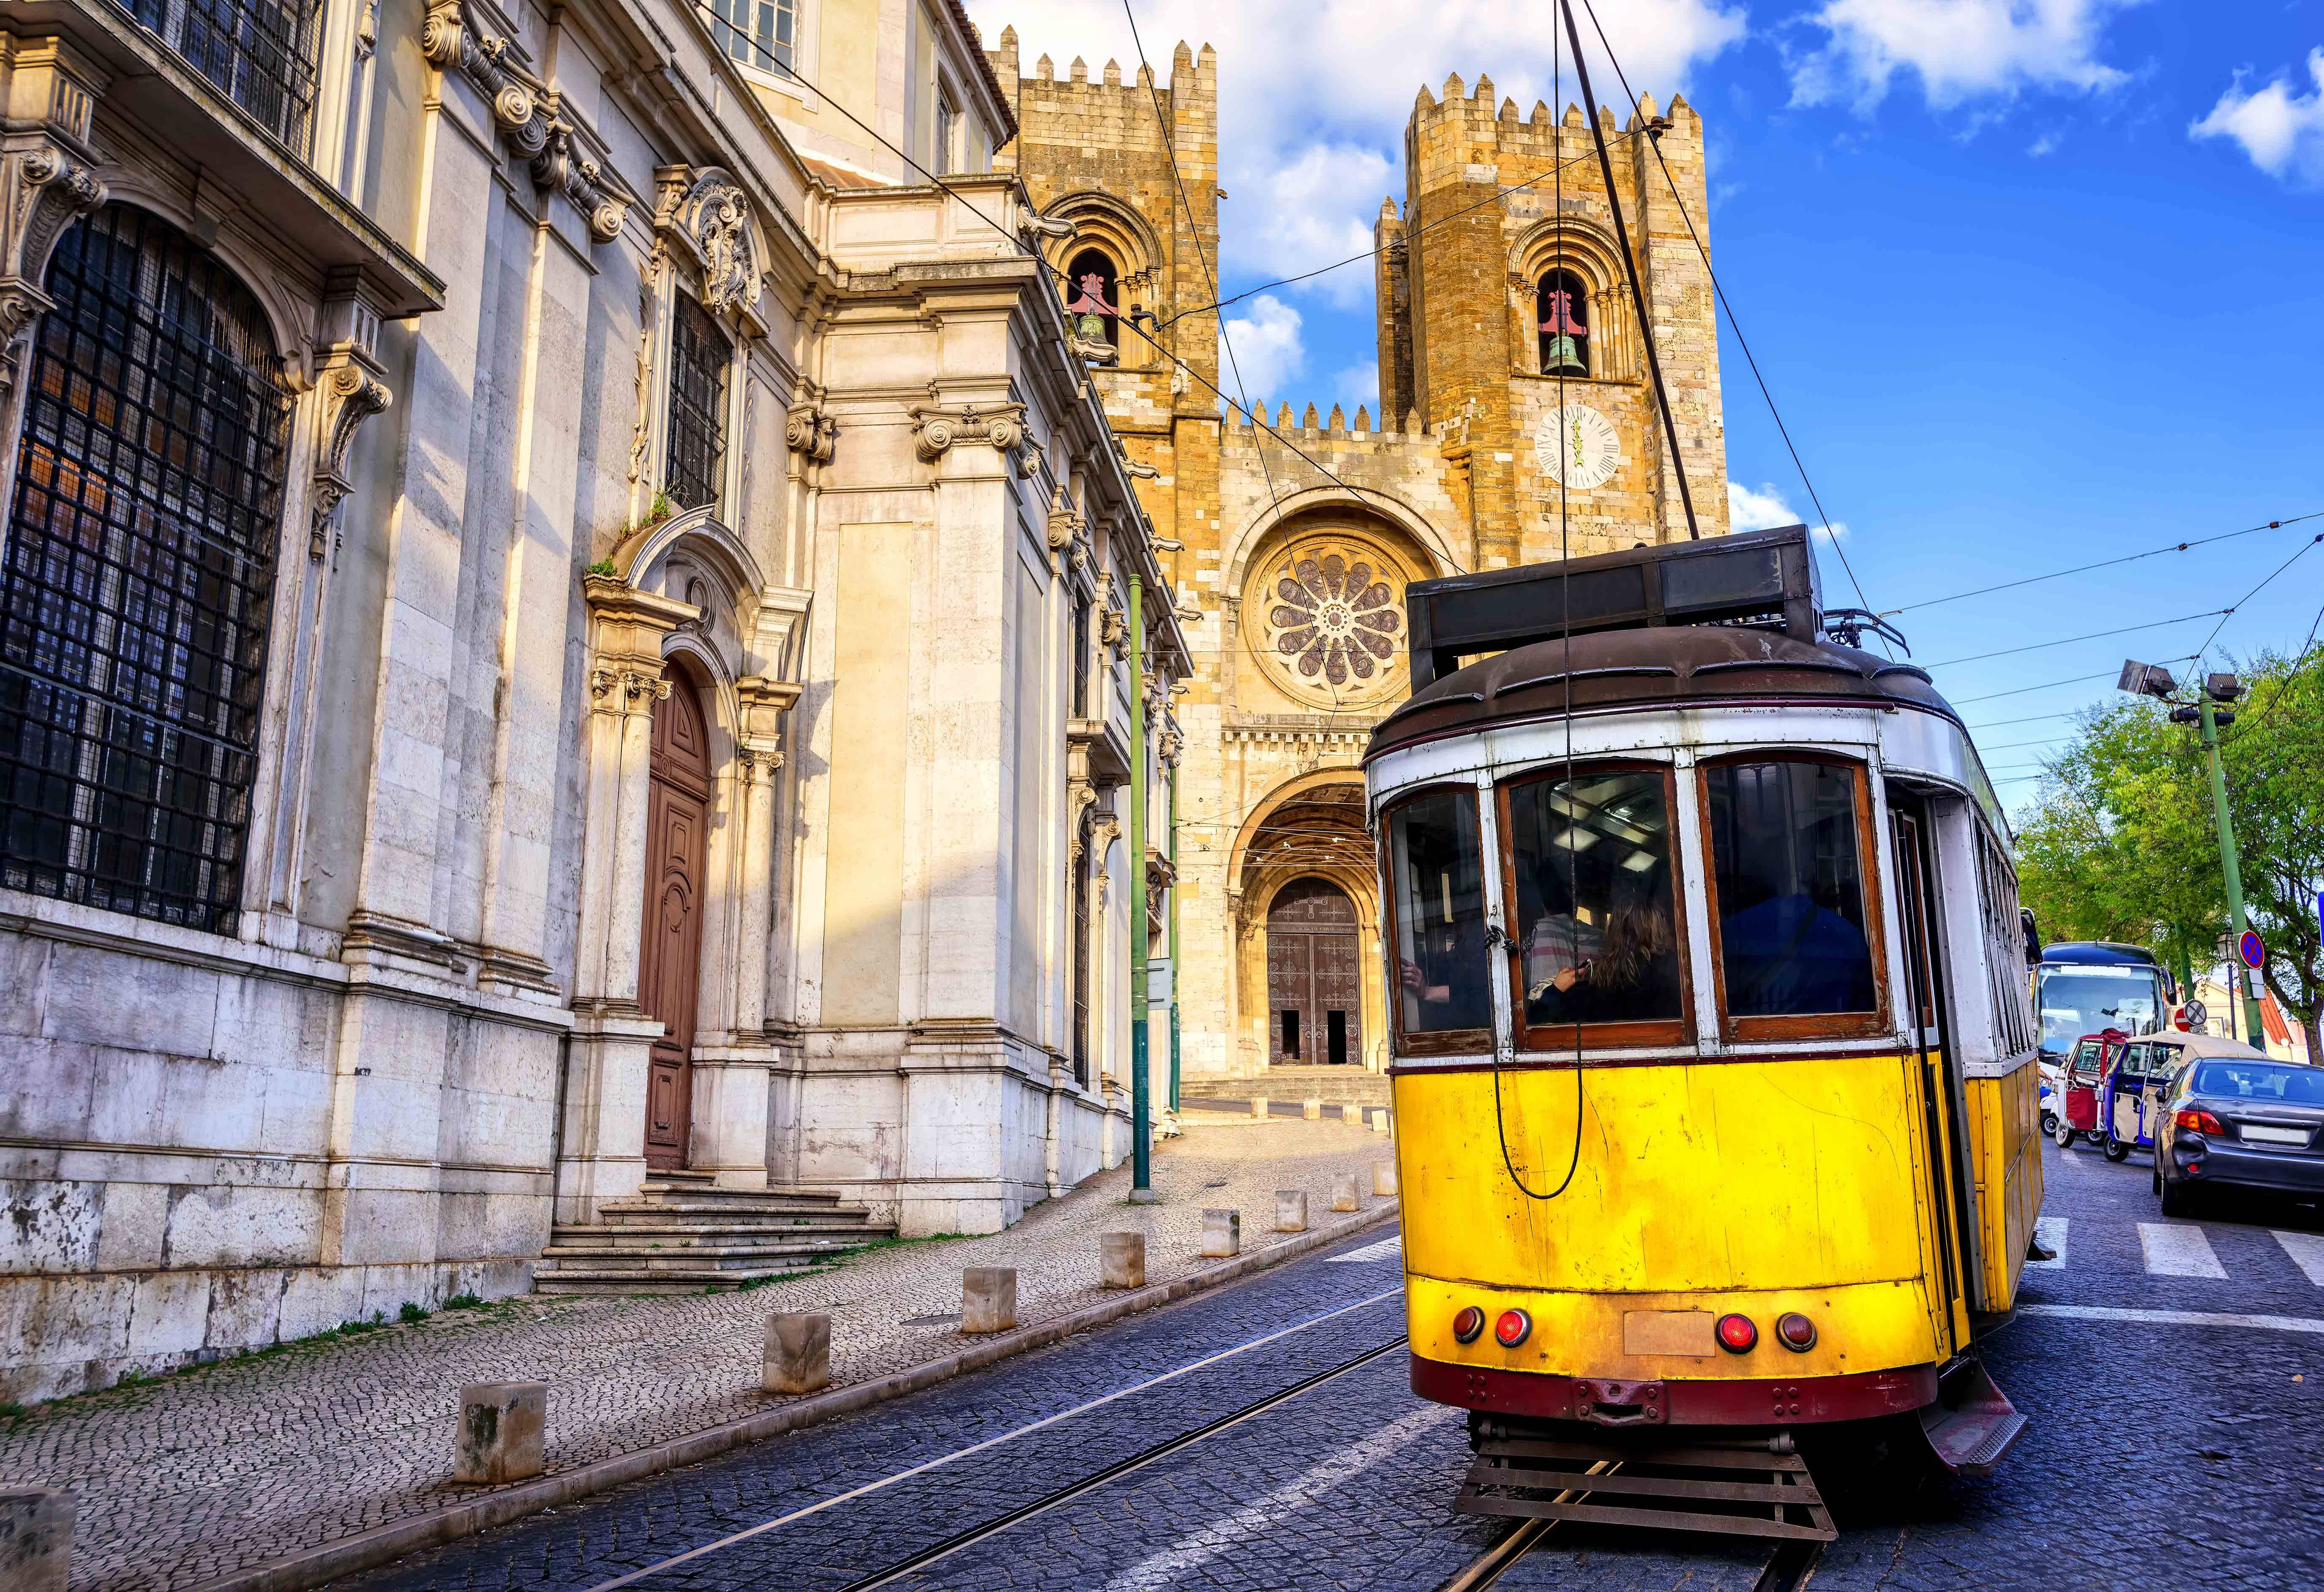 Tours Excursiones Traslados En Lisboa